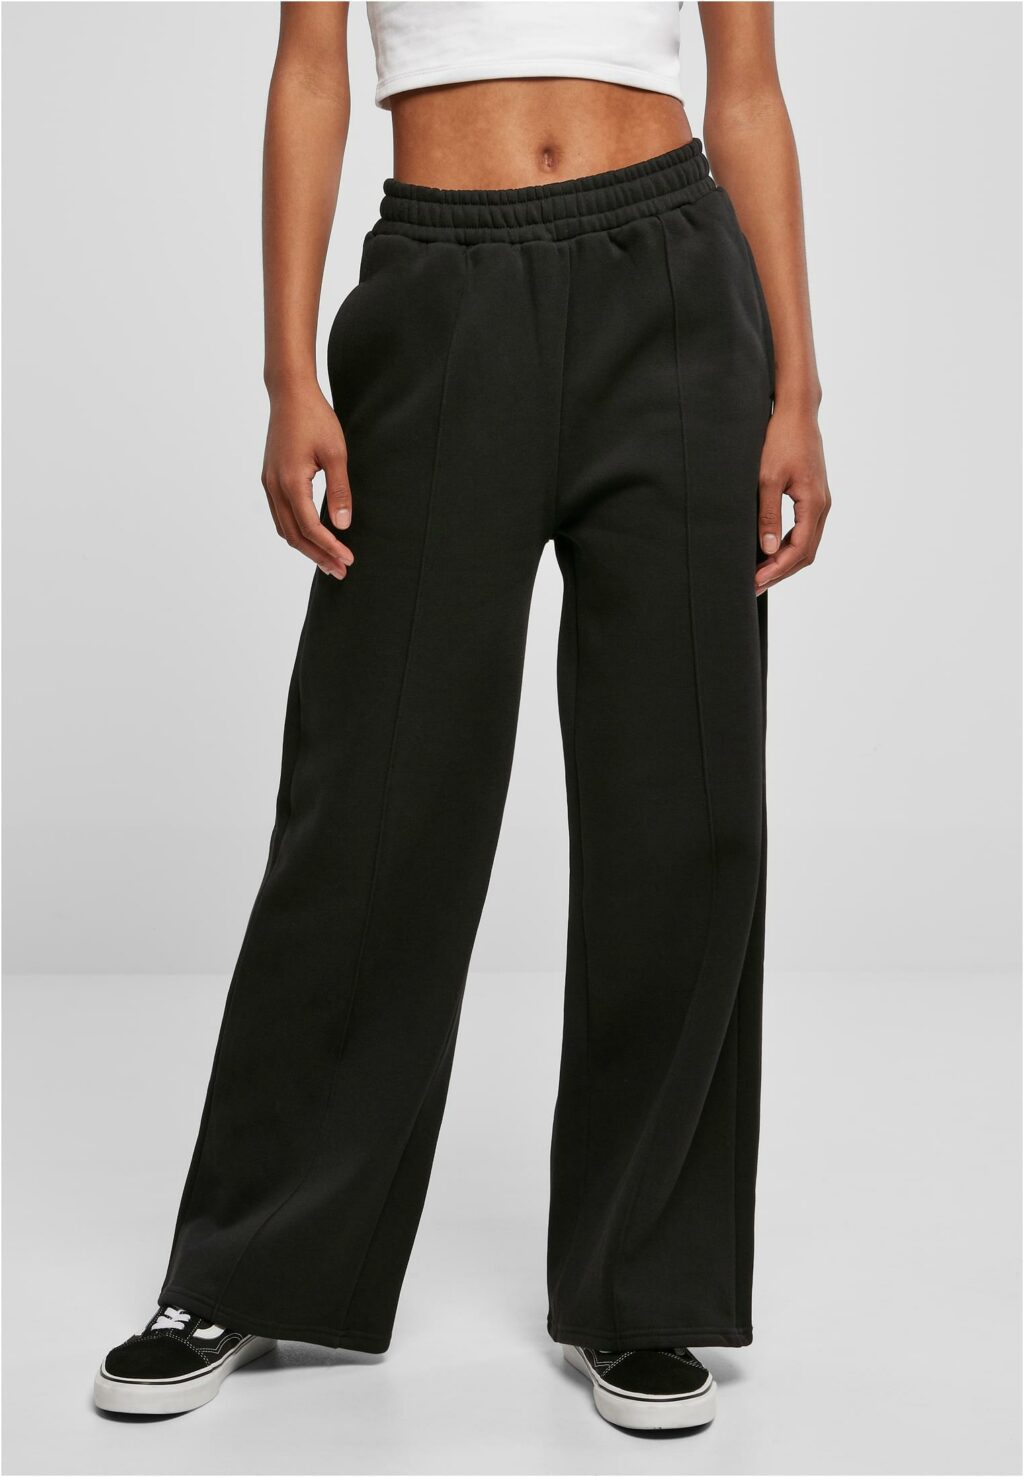 Urban Classics Ladies Straight Pin Tuck Sweat Pants black TB4562